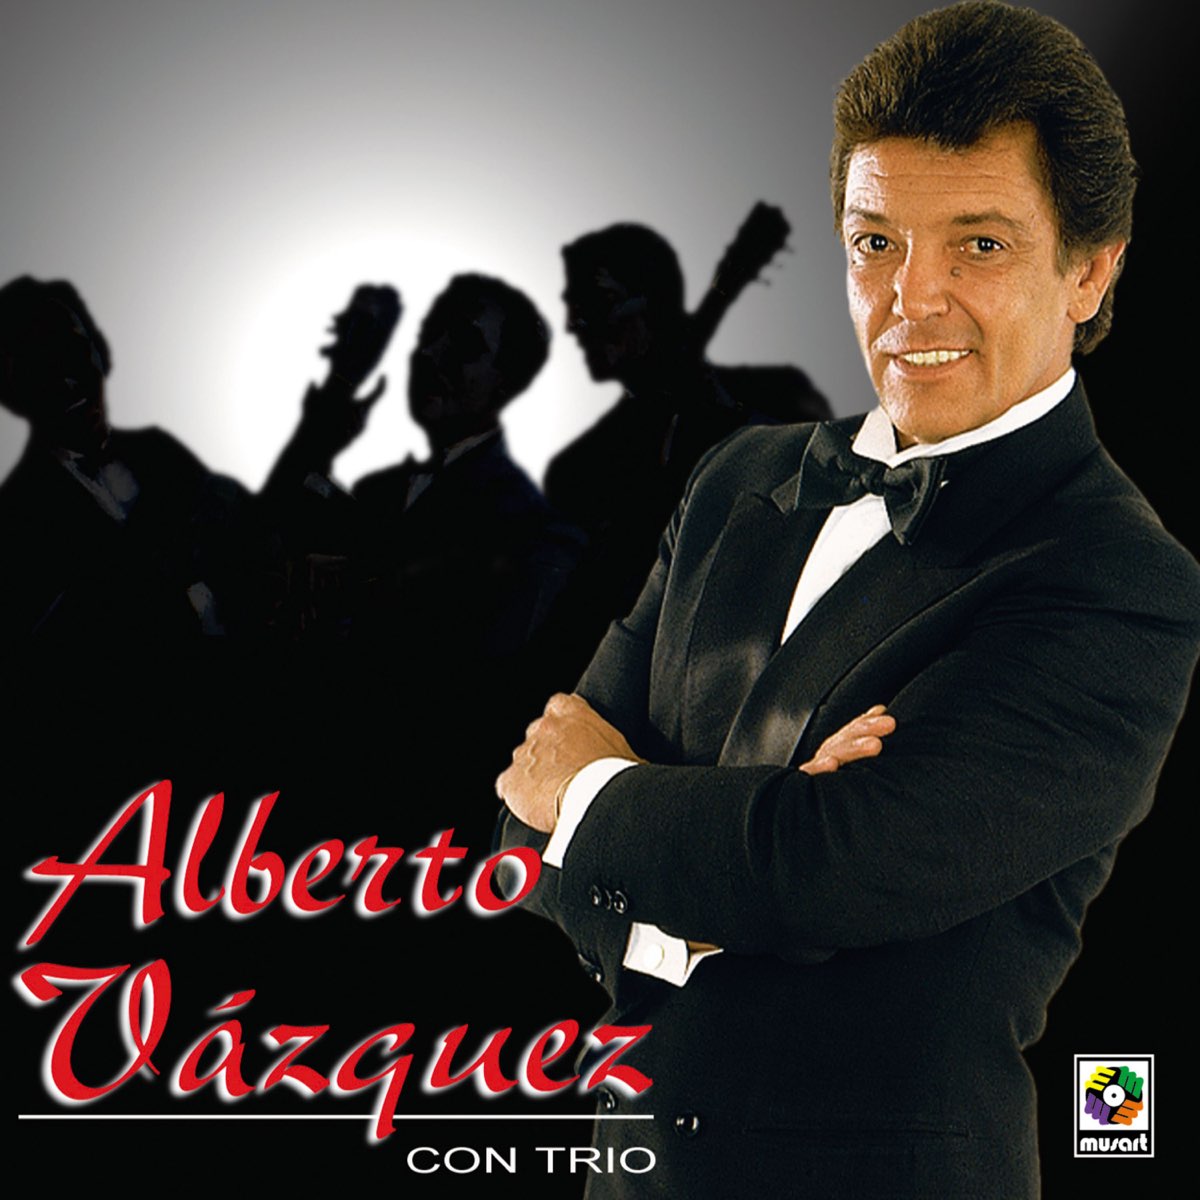 Alberto vazquez maracas lyrics